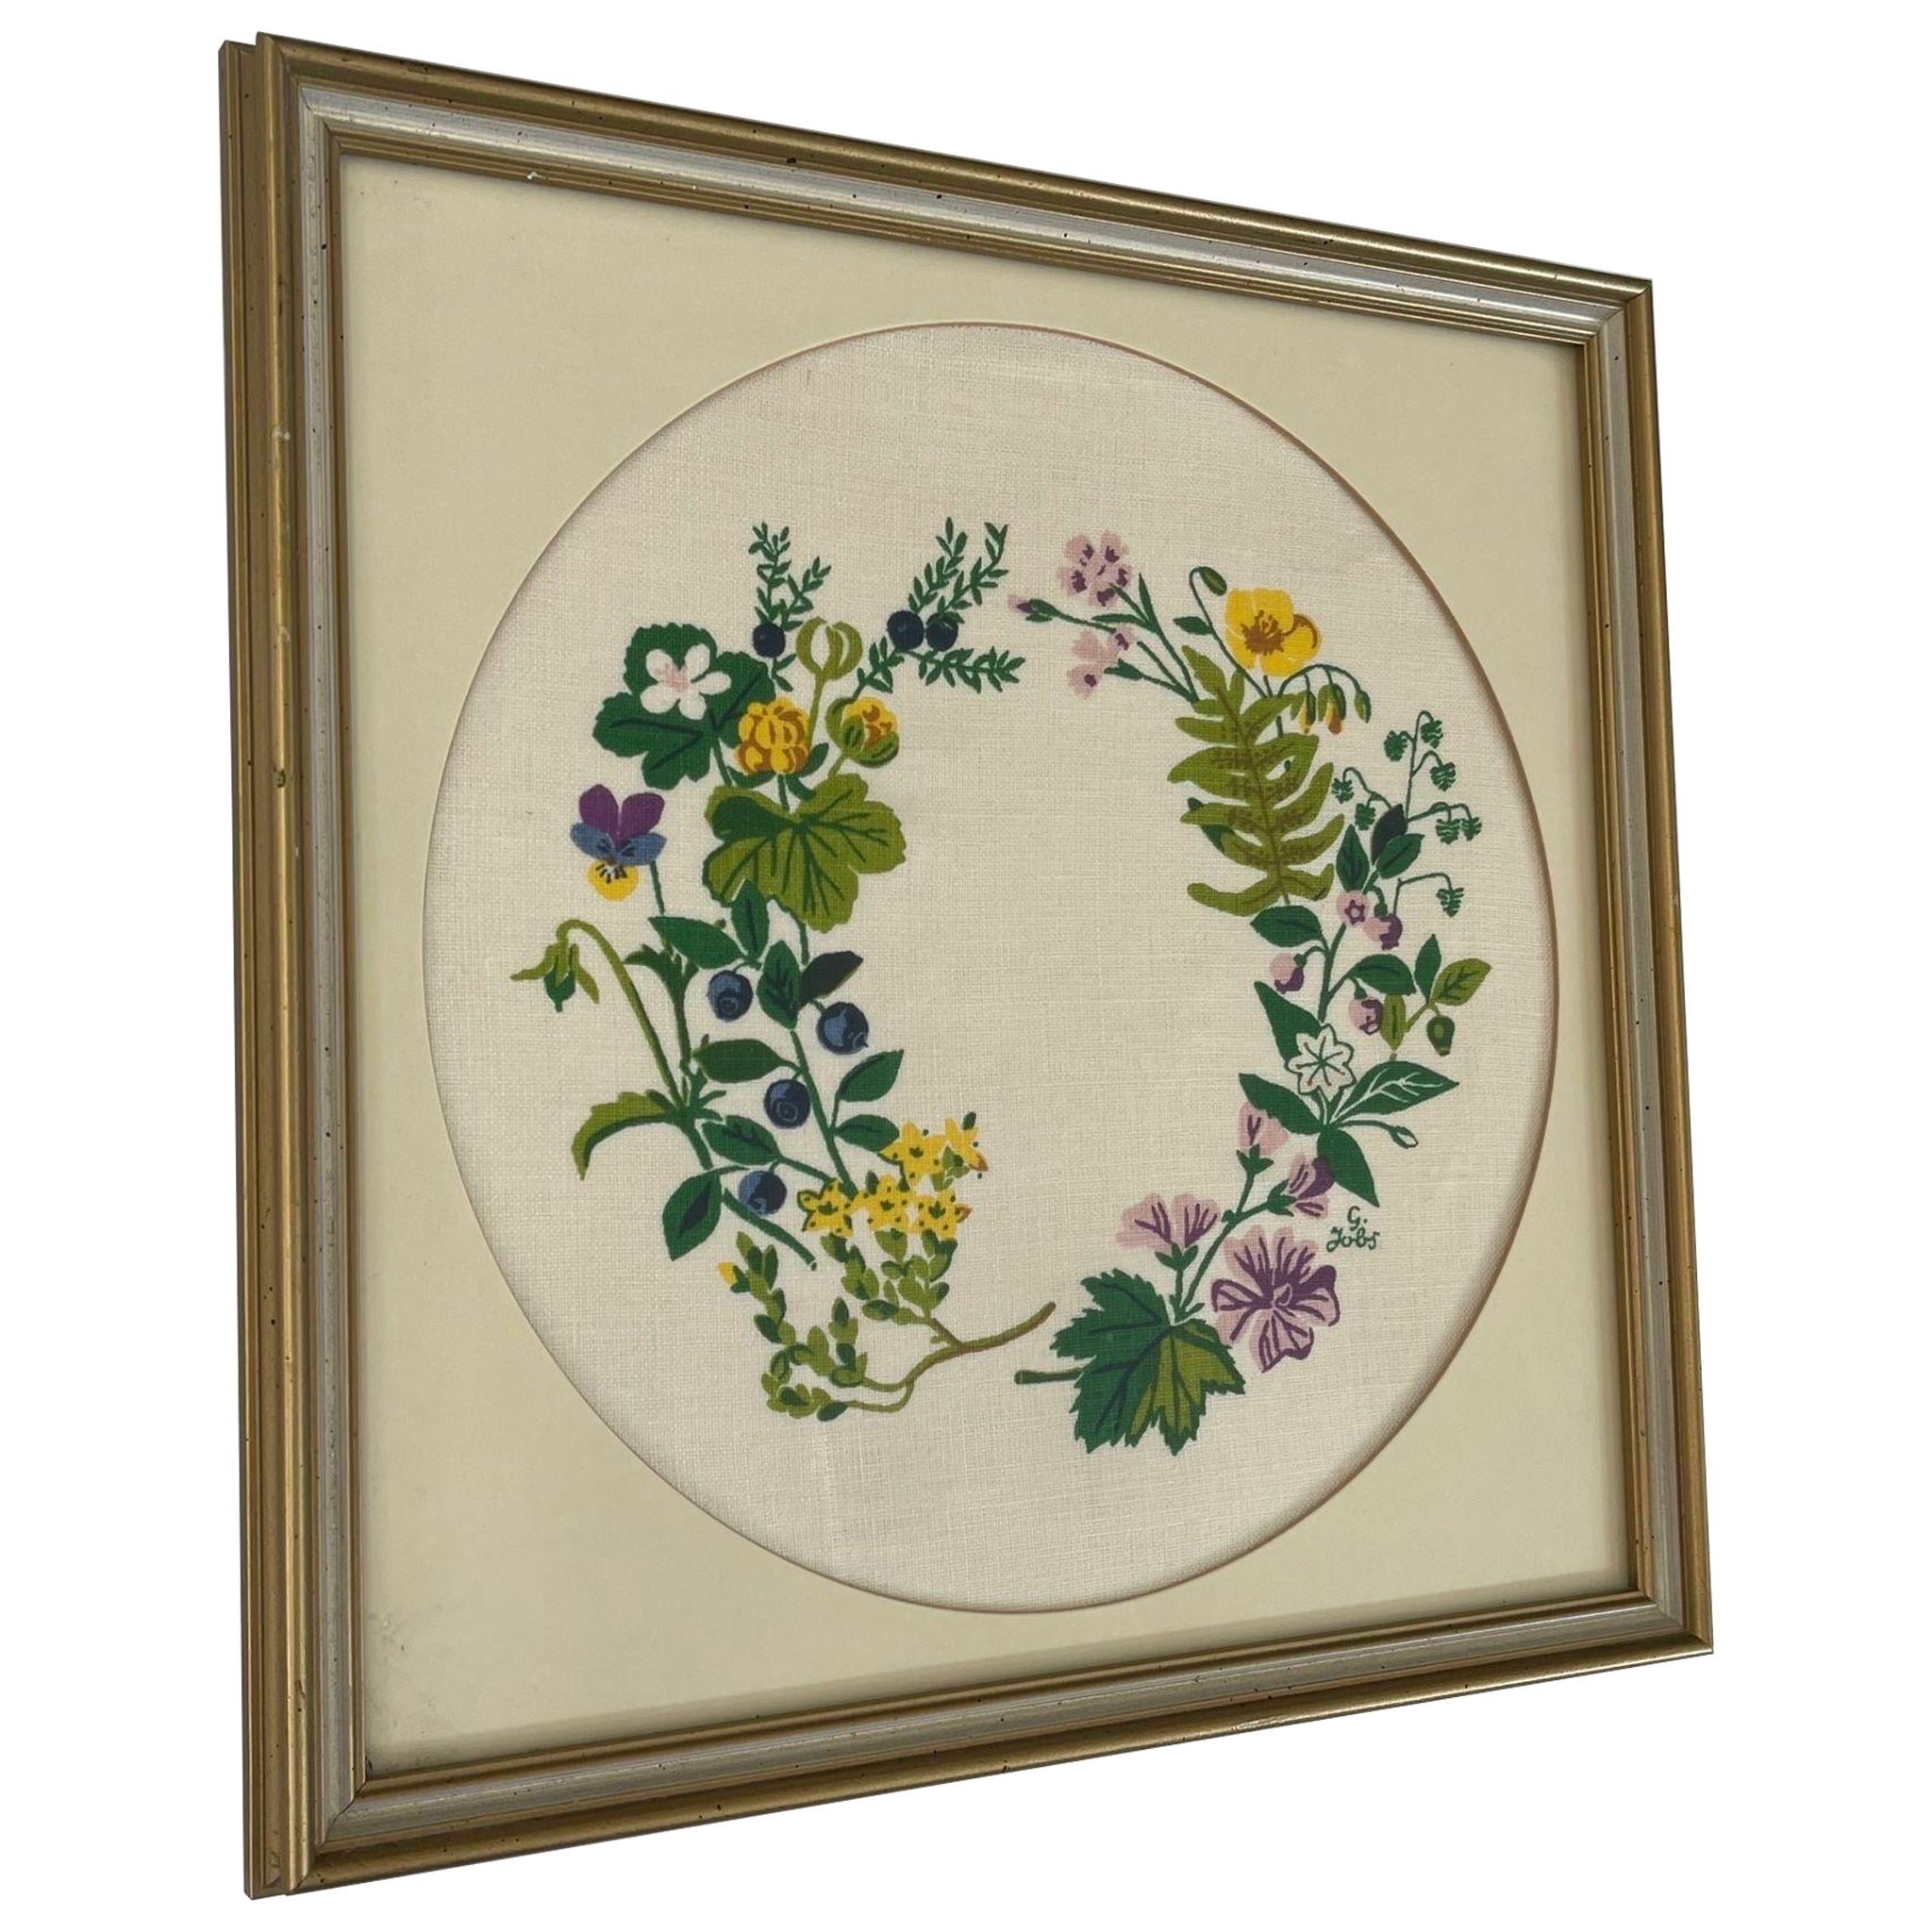 Vintage Original Framed and Signed Floral Wreath Artwork.